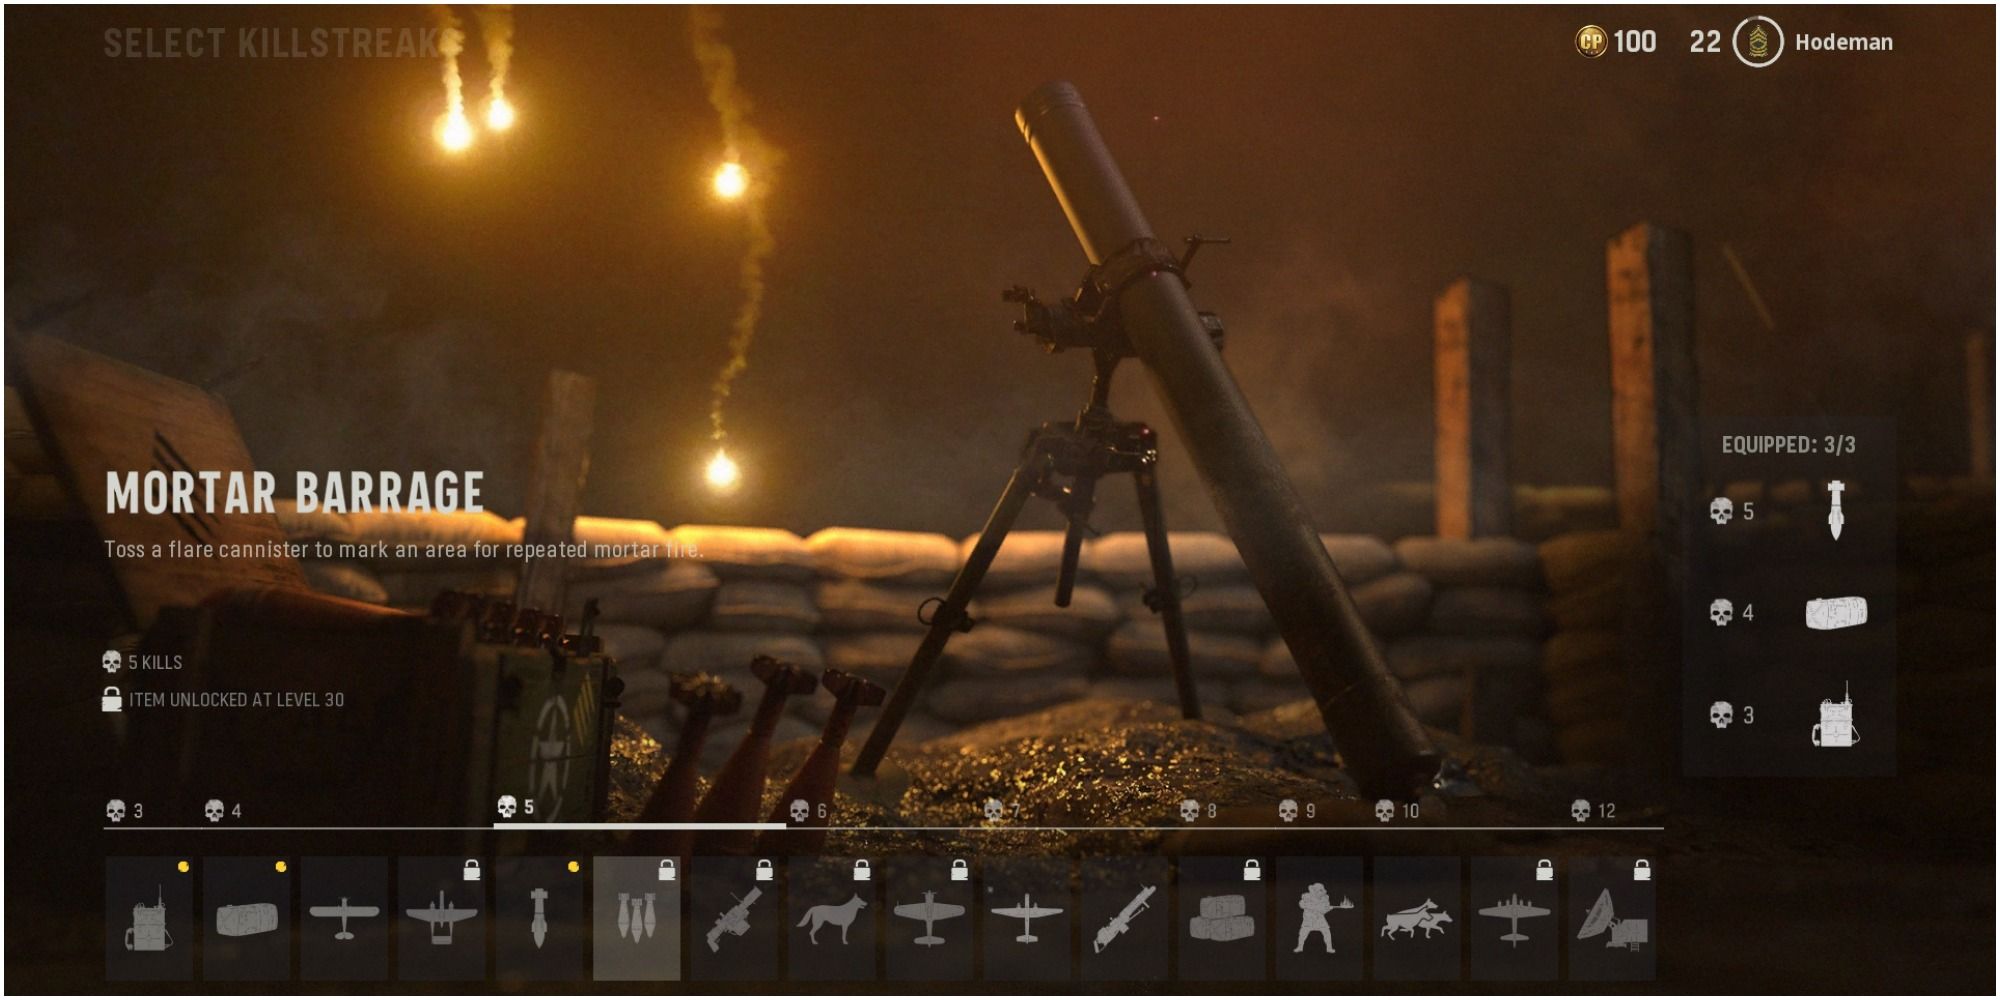 Call Of Duty Vanguard Description Of The Mortar Barrage Killstreak Reward